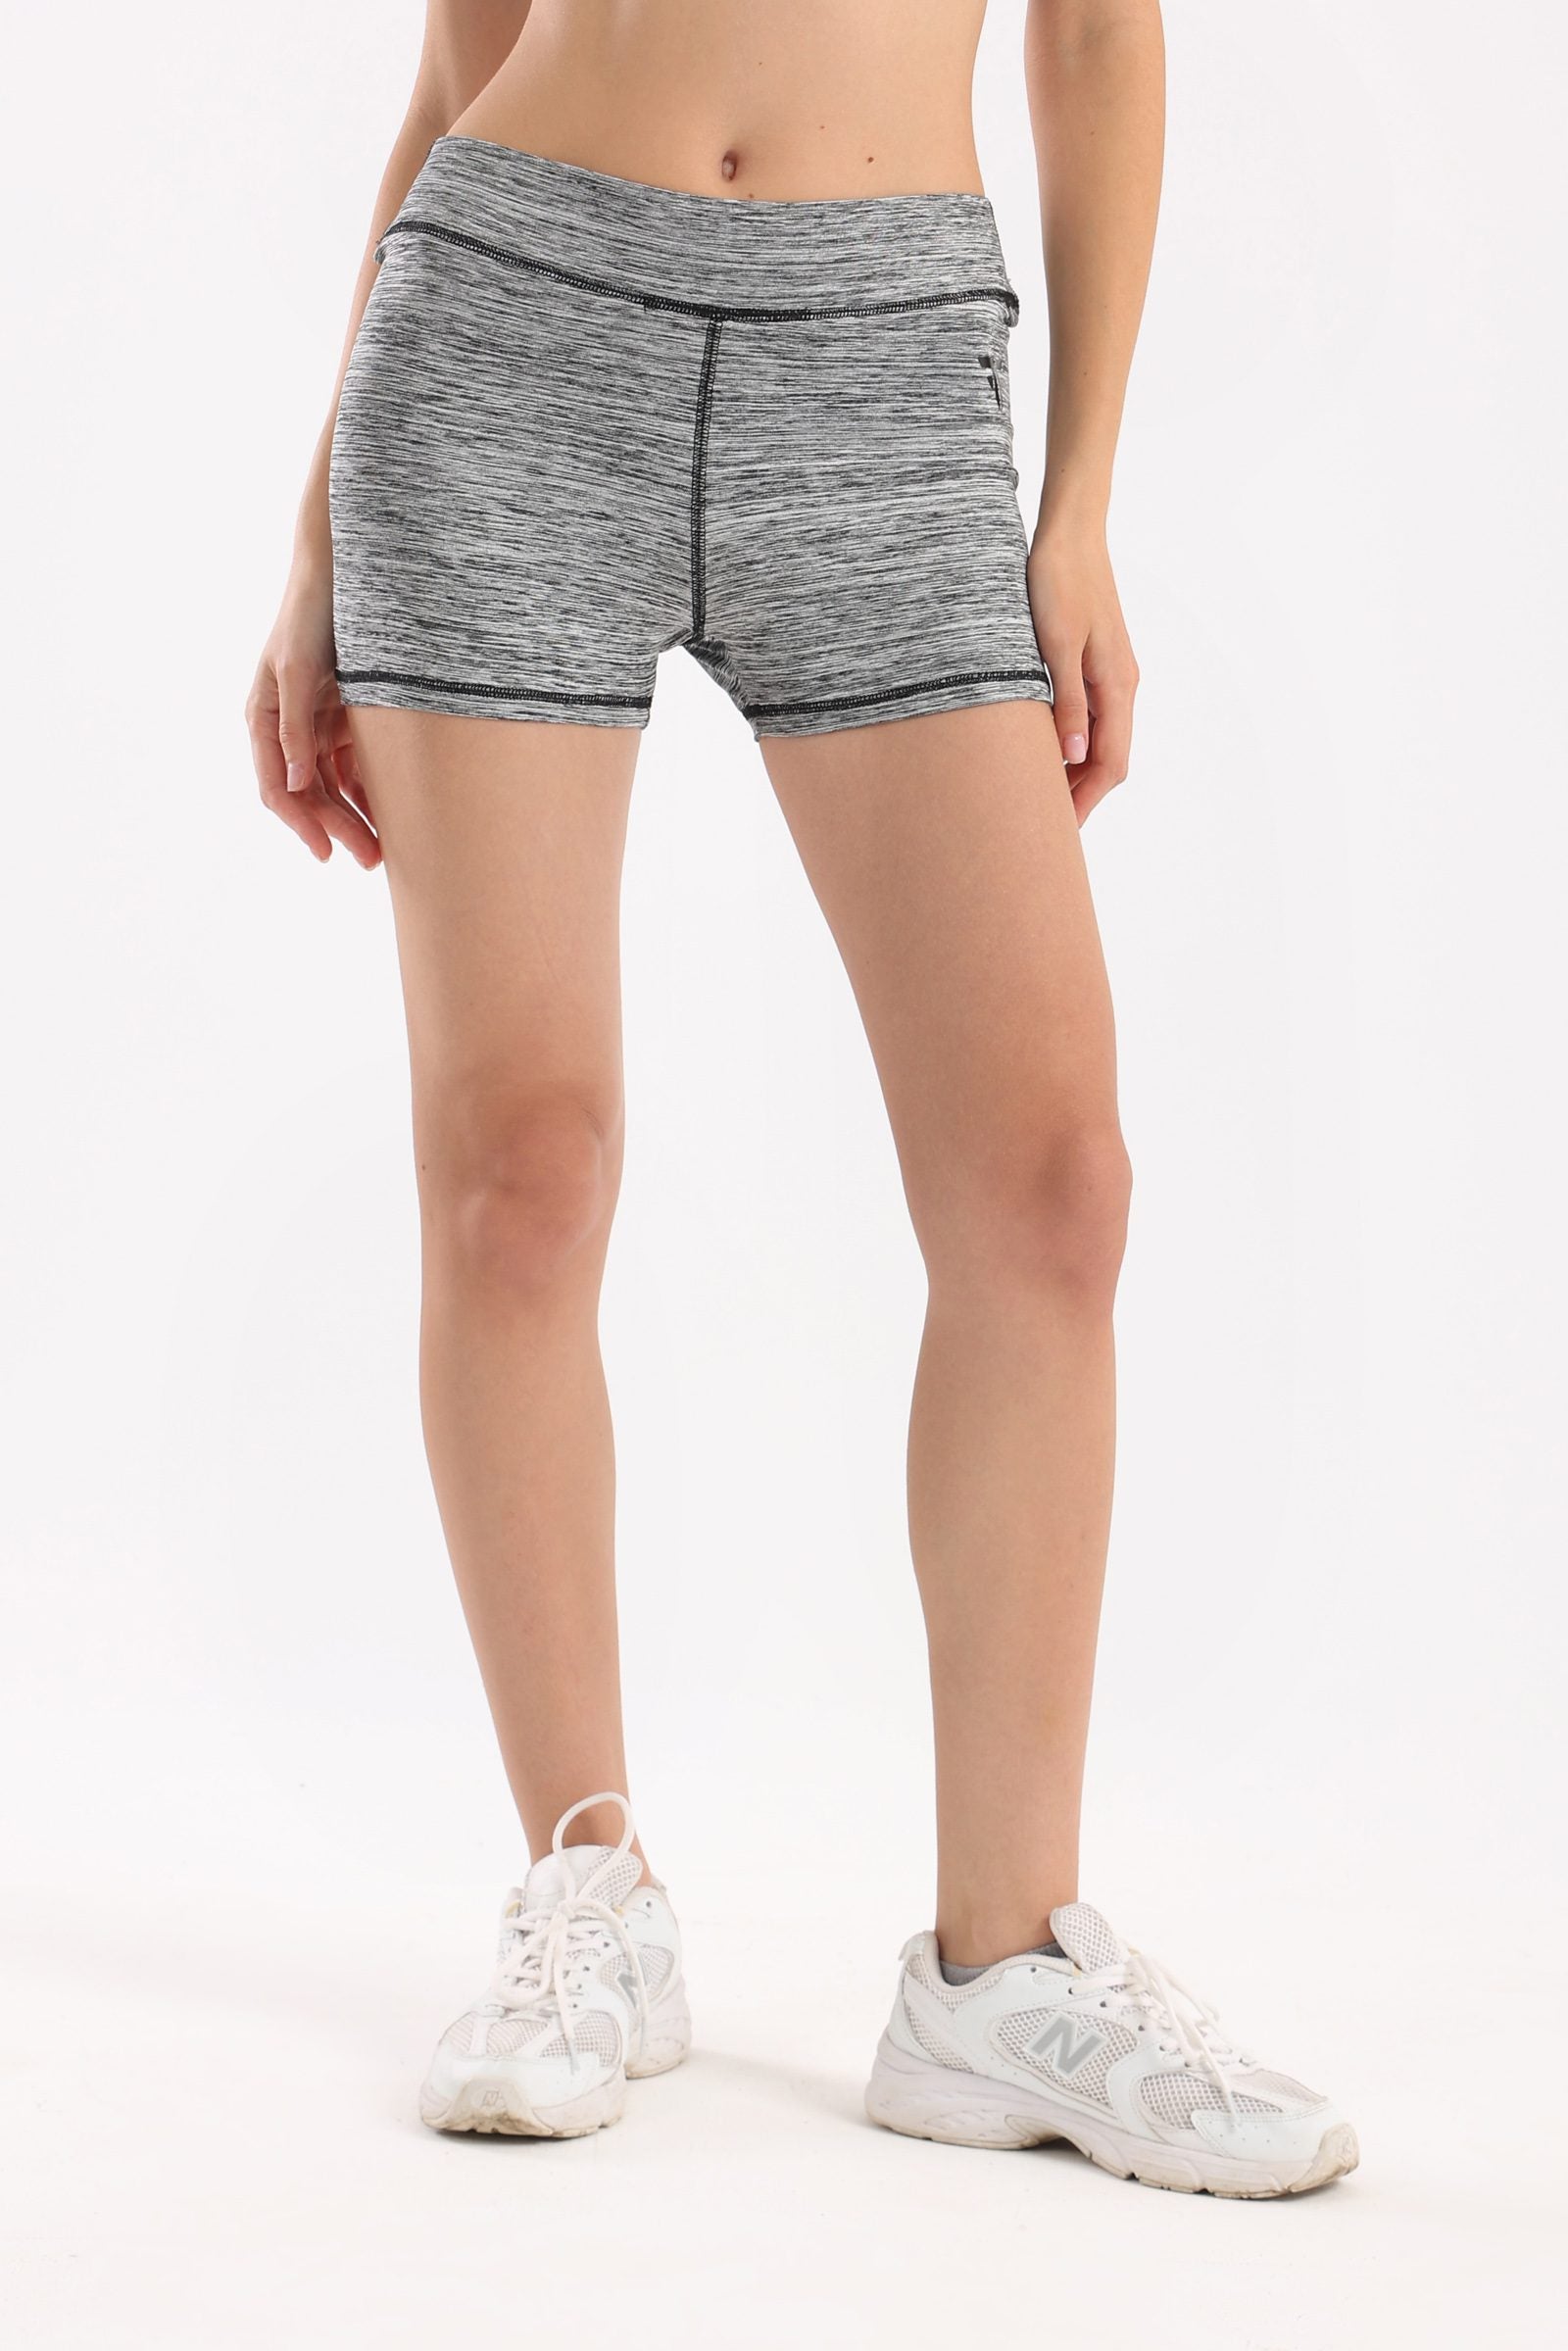 Ash grey heather basic shorts